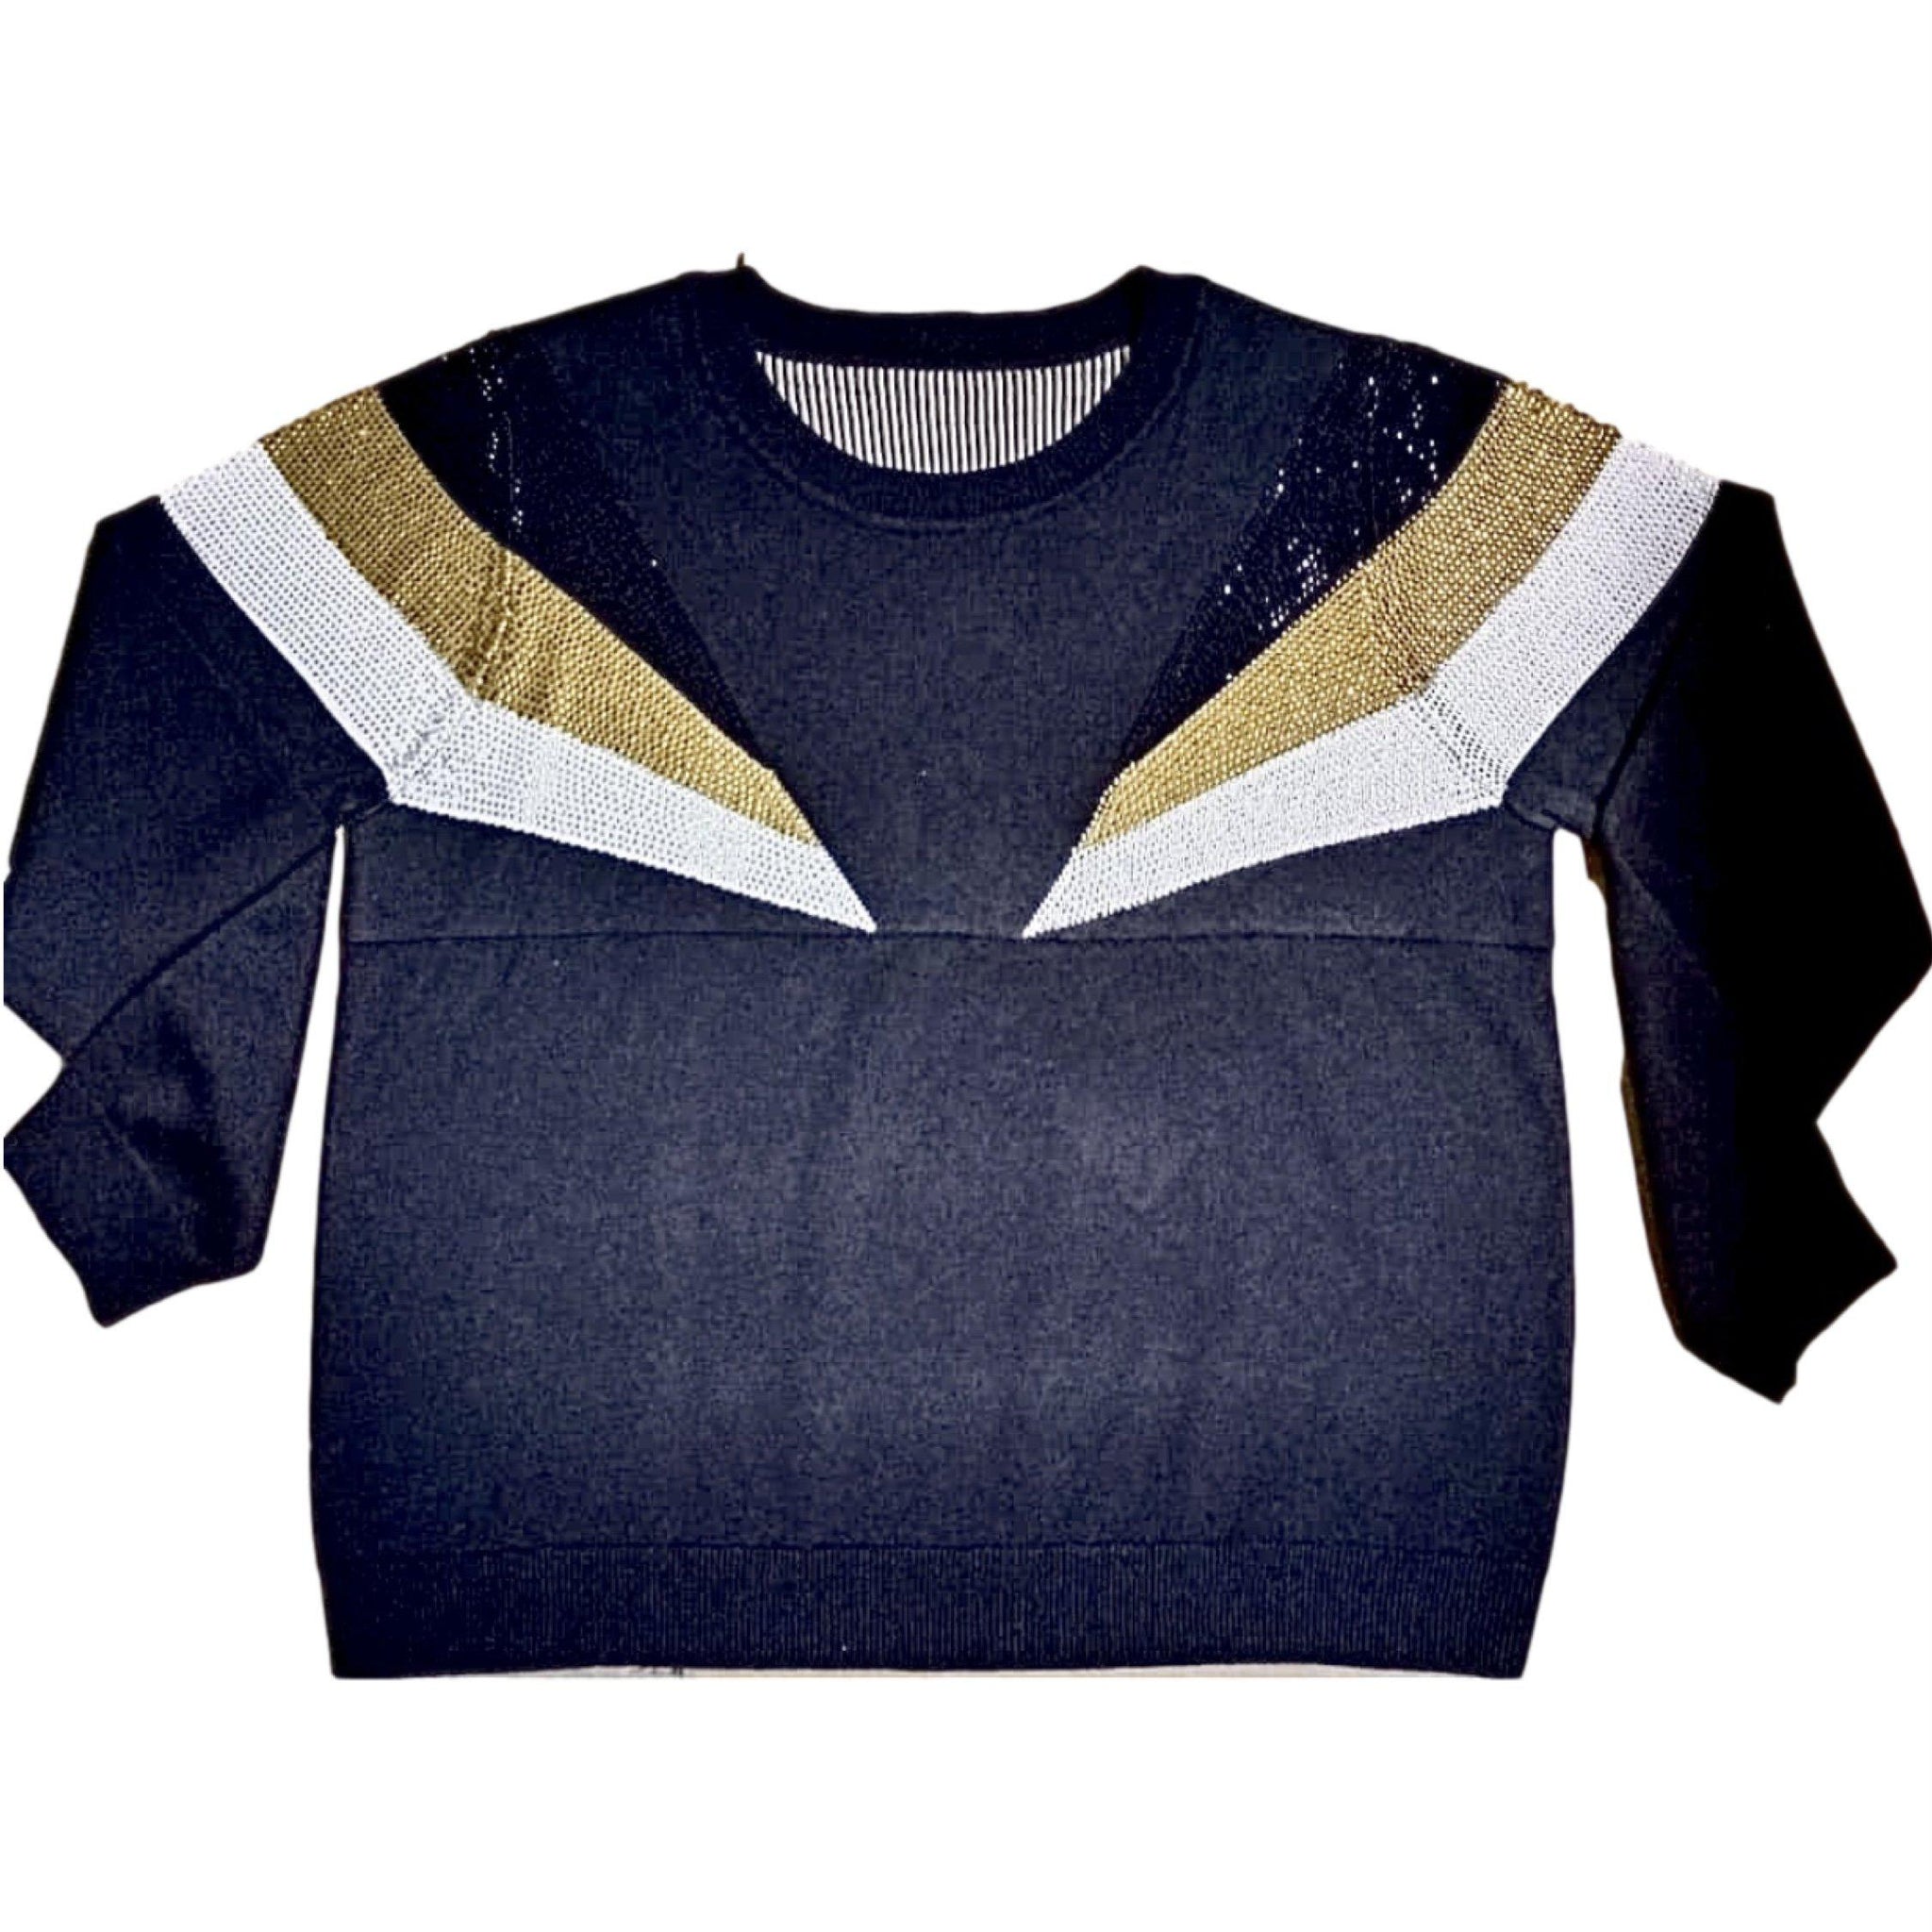 Black and Gold Shoulder Stripes Sweater